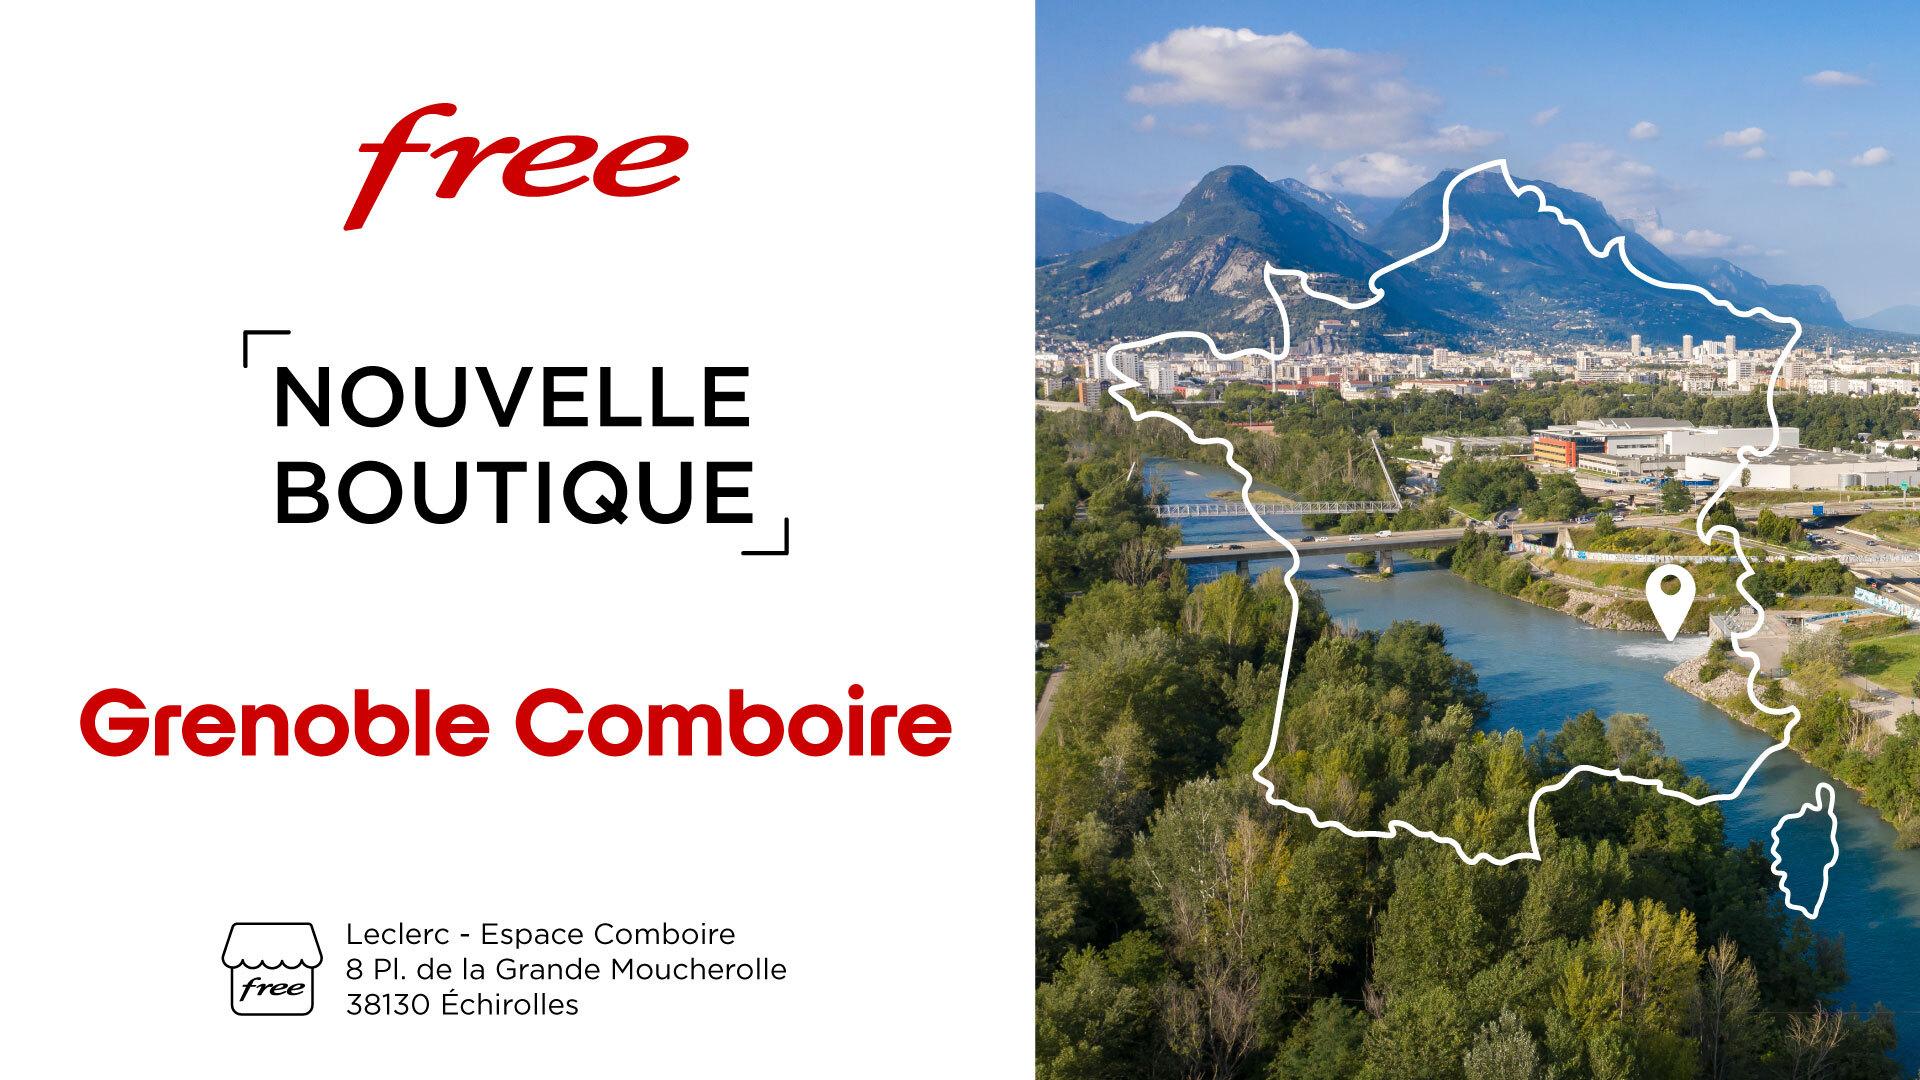 Découvrez la nouvelle boutique Free de Grenoble au centre commercial Comboire